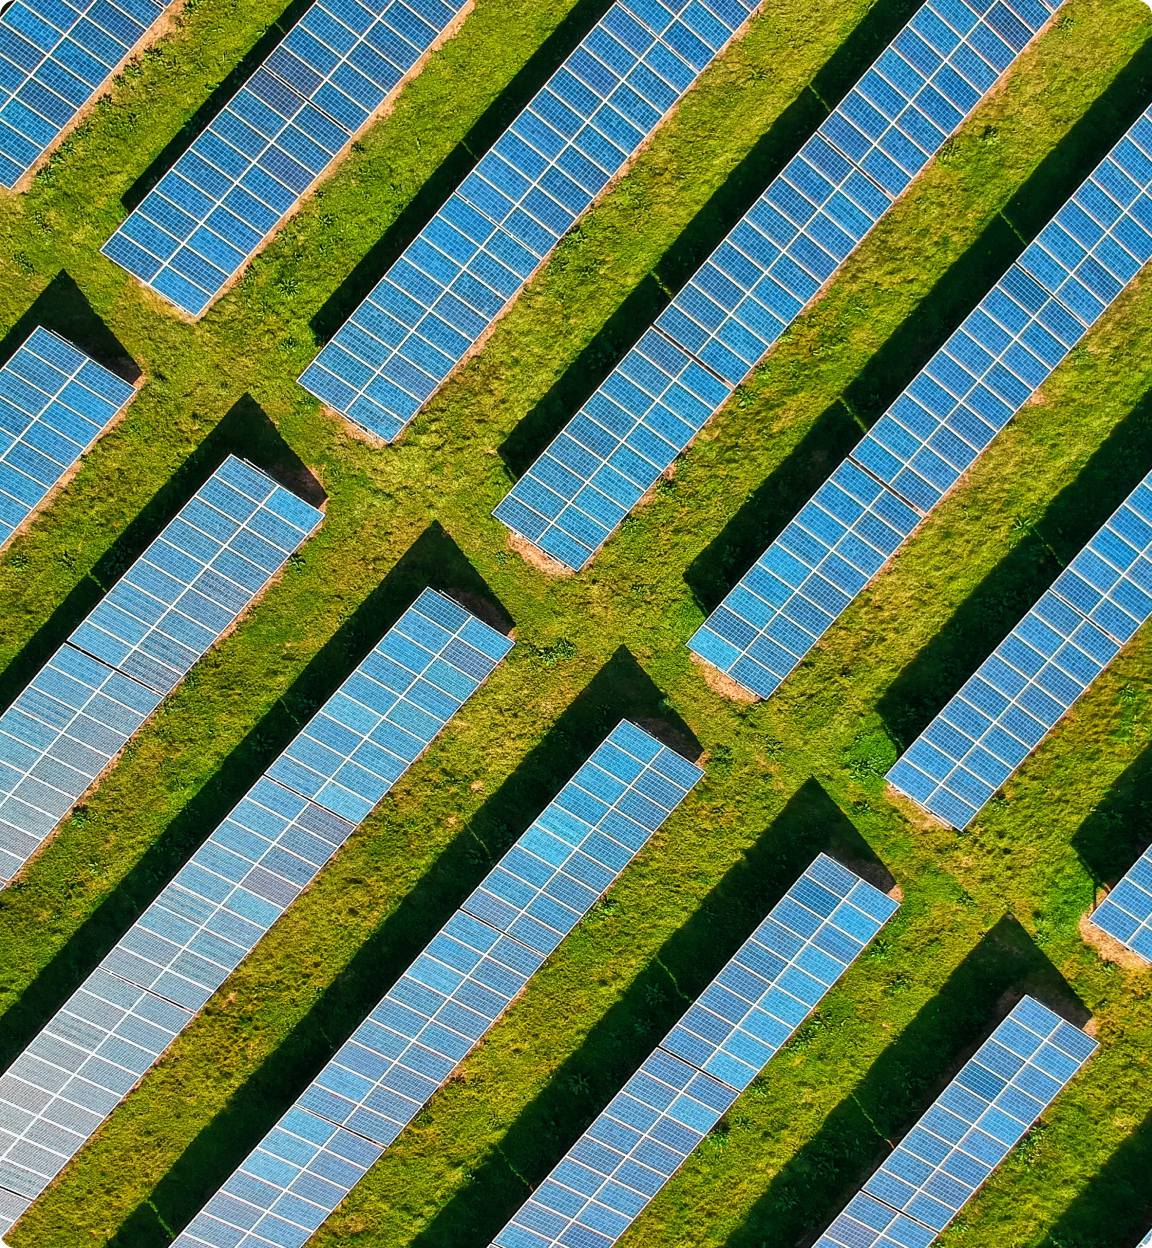 Solar panels in a green field